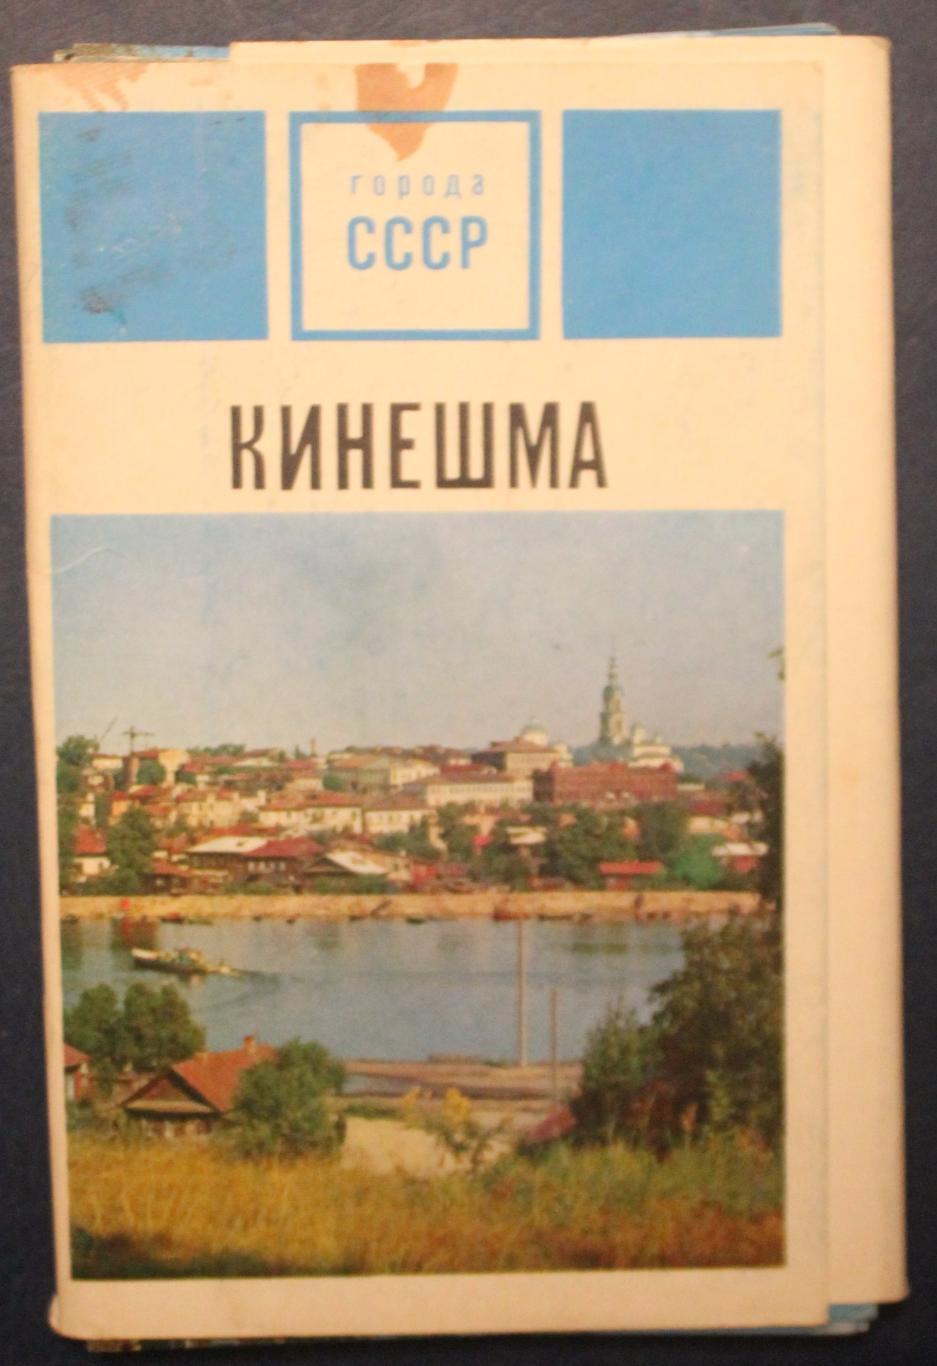 Набор открыток Кинешма из серии Города СССР 1971